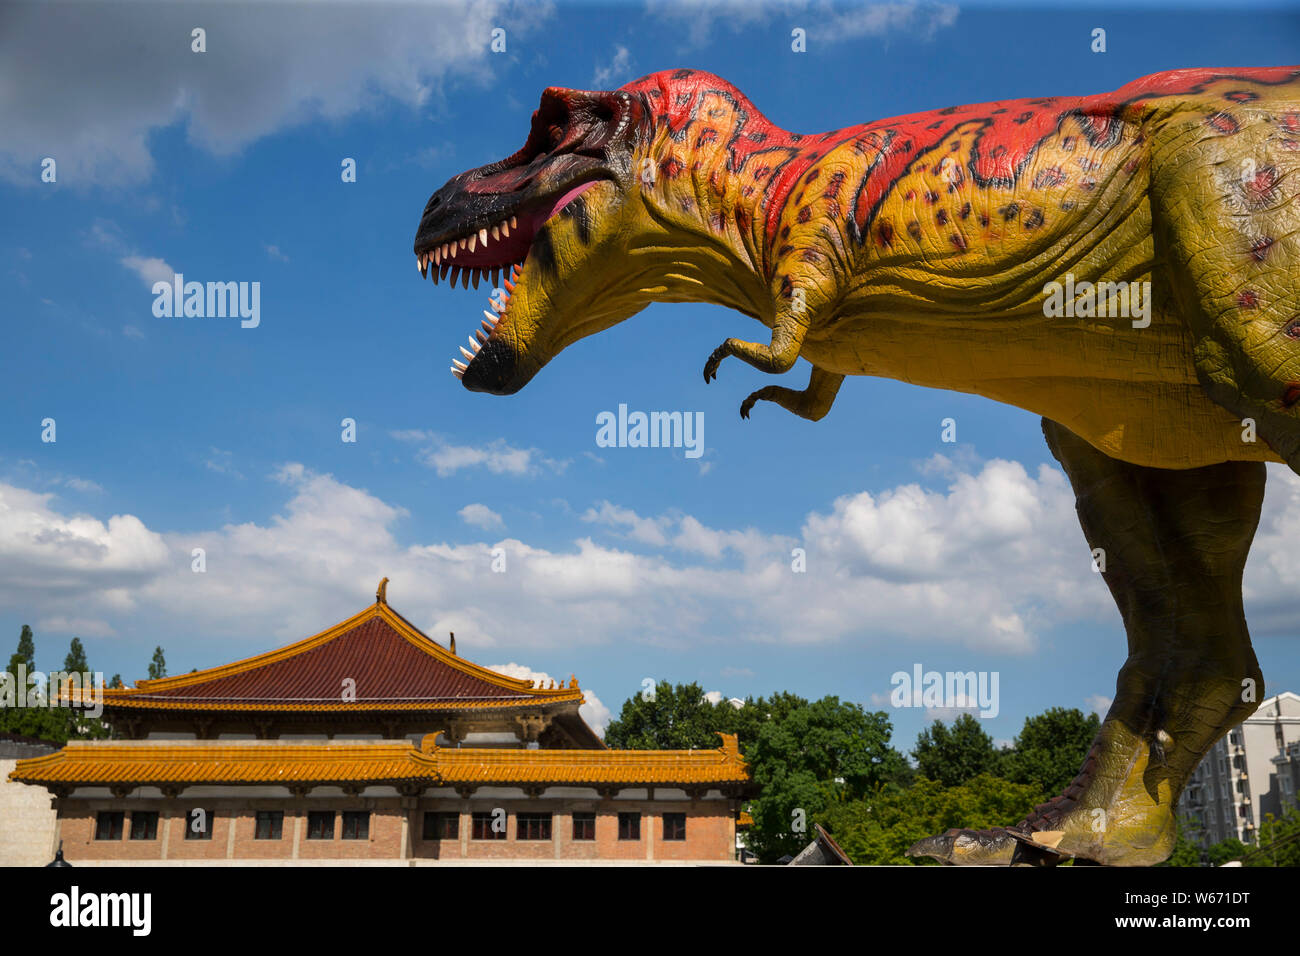 Avis d'un dinosaure modèle sur l'affichage à l'exposition mondiale Jurassique Musée de Nanjing à Nanjing city Jiangsu province de Chine orientale, le 13 juillet 2018. L Banque D'Images